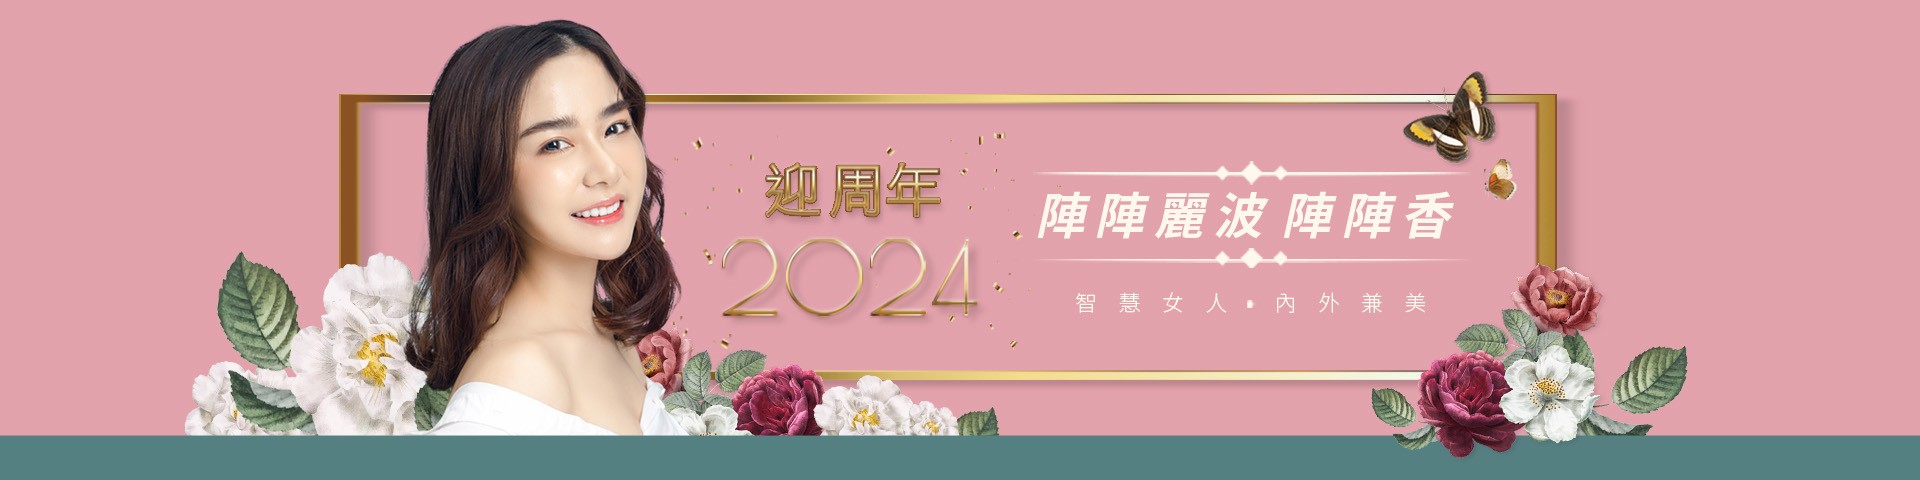 2023麗波迎周年 智慧女人、內外兼美